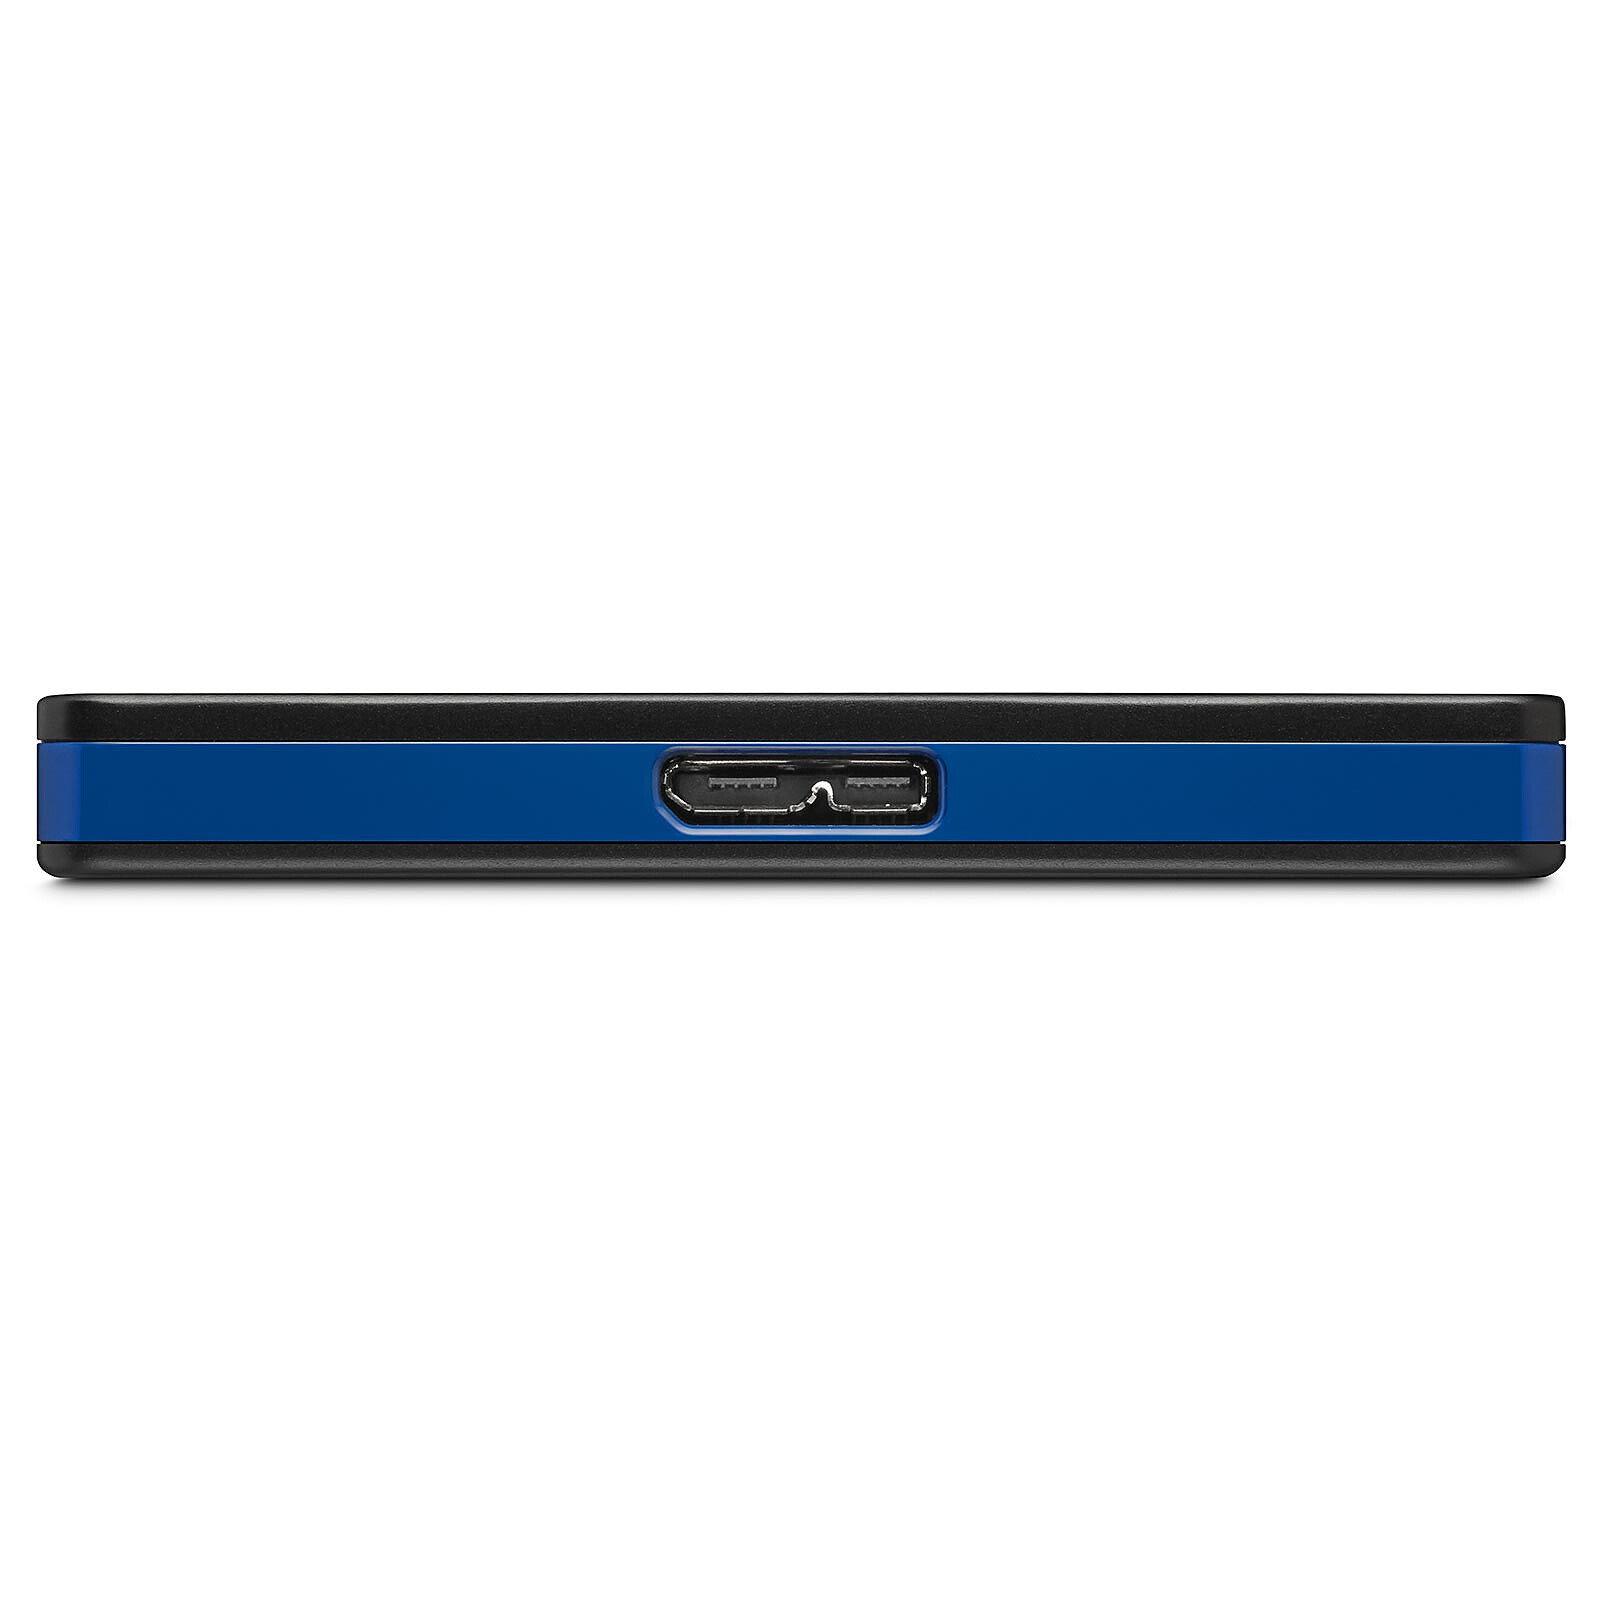 Disque dur externe Seagate Game Drive for PS4 STGD2000200 - Disque dur - 2  To - externe (portable) - USB 3.0 - noir - pour Sony PlayStation 4, Sony  PlayStation 4 Pro, Sony